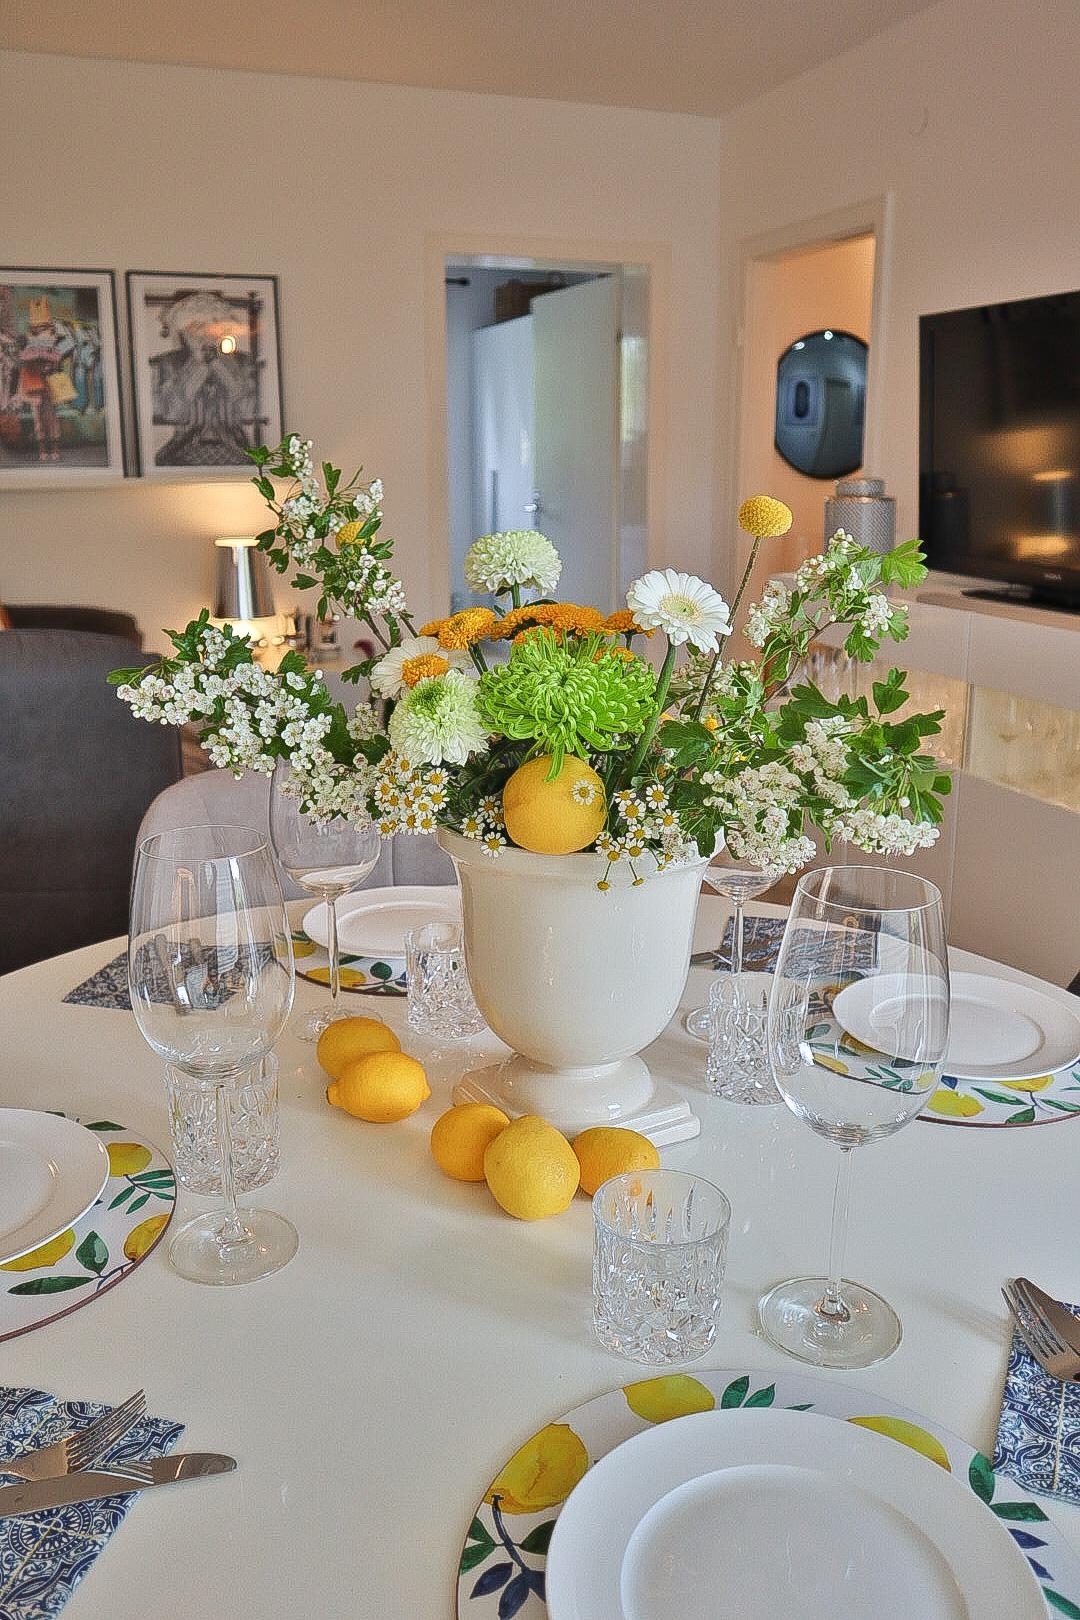 Nichts geht über eine frische #Tischdeko mit einem selbst arrangierten Blumenbouquet 🍋 #livingchallenge